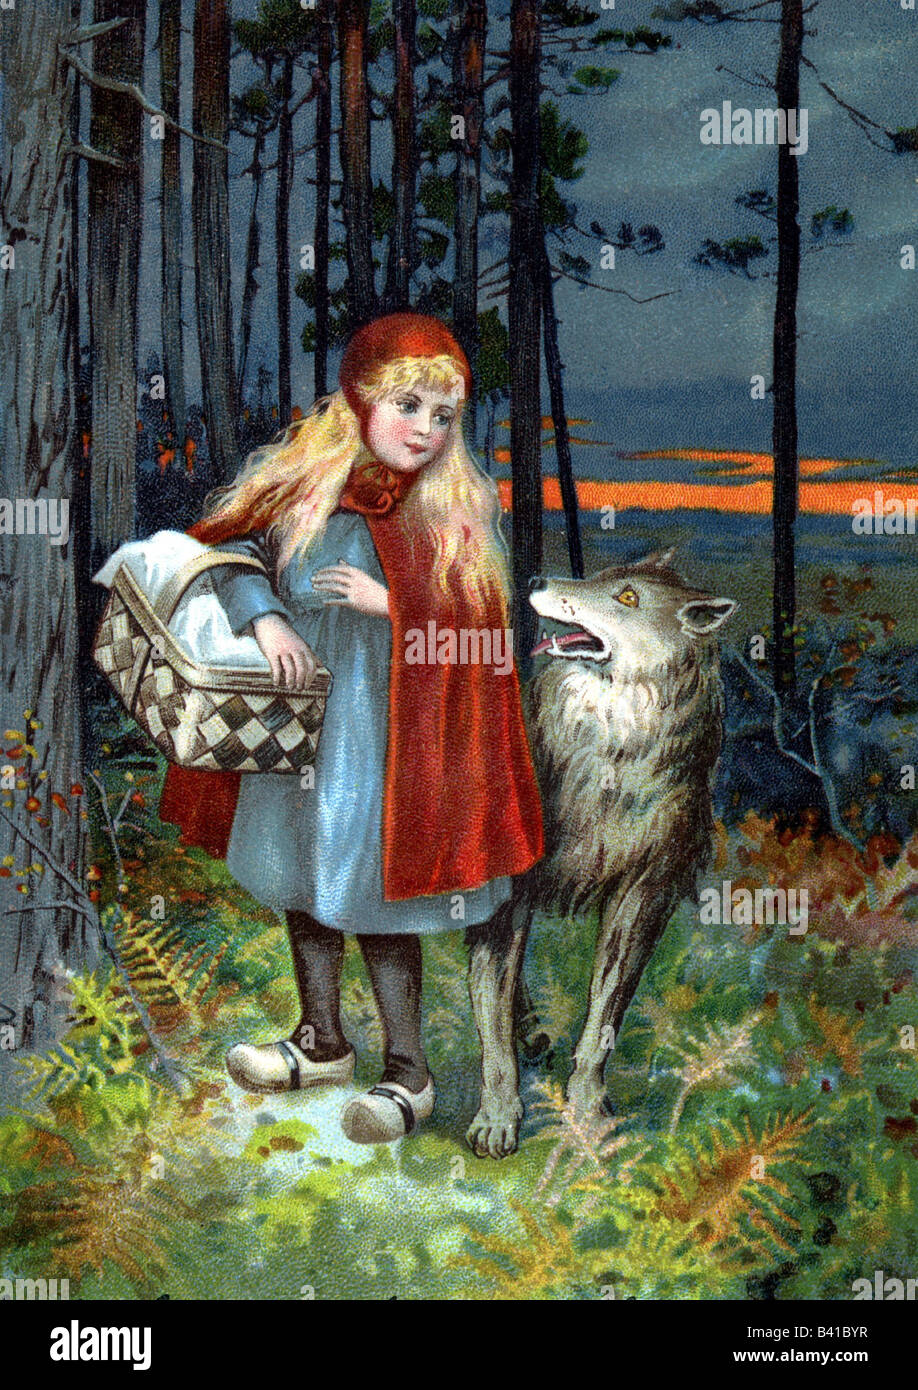 Literatura, cuento de 'Little Red Riding Hood', por los hermanos Grimm,  Little Red Riding Hood y el lobo en la madera, alrededor de 1910, siglo 20,  folktale Fotografía de stock - Alamy